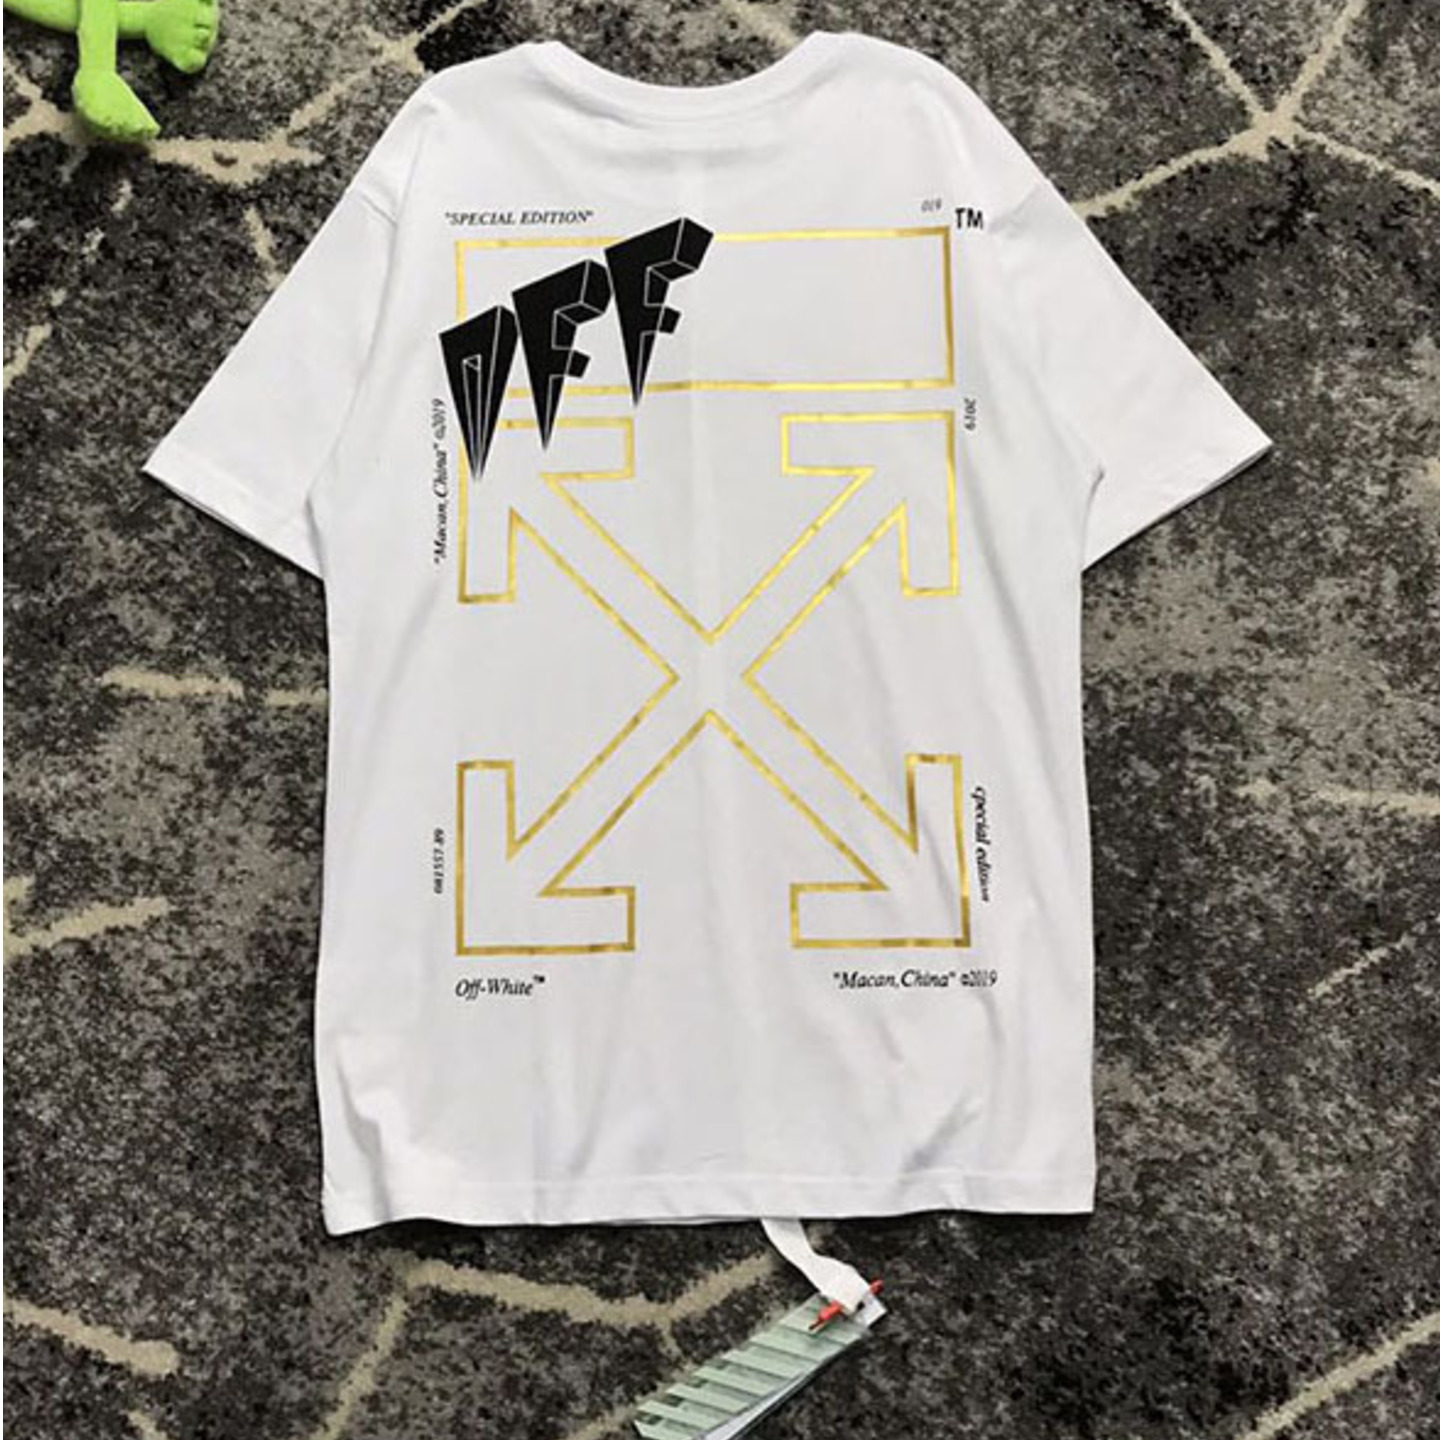 Off-White Macau Golden Arrow SS19 T-shirt